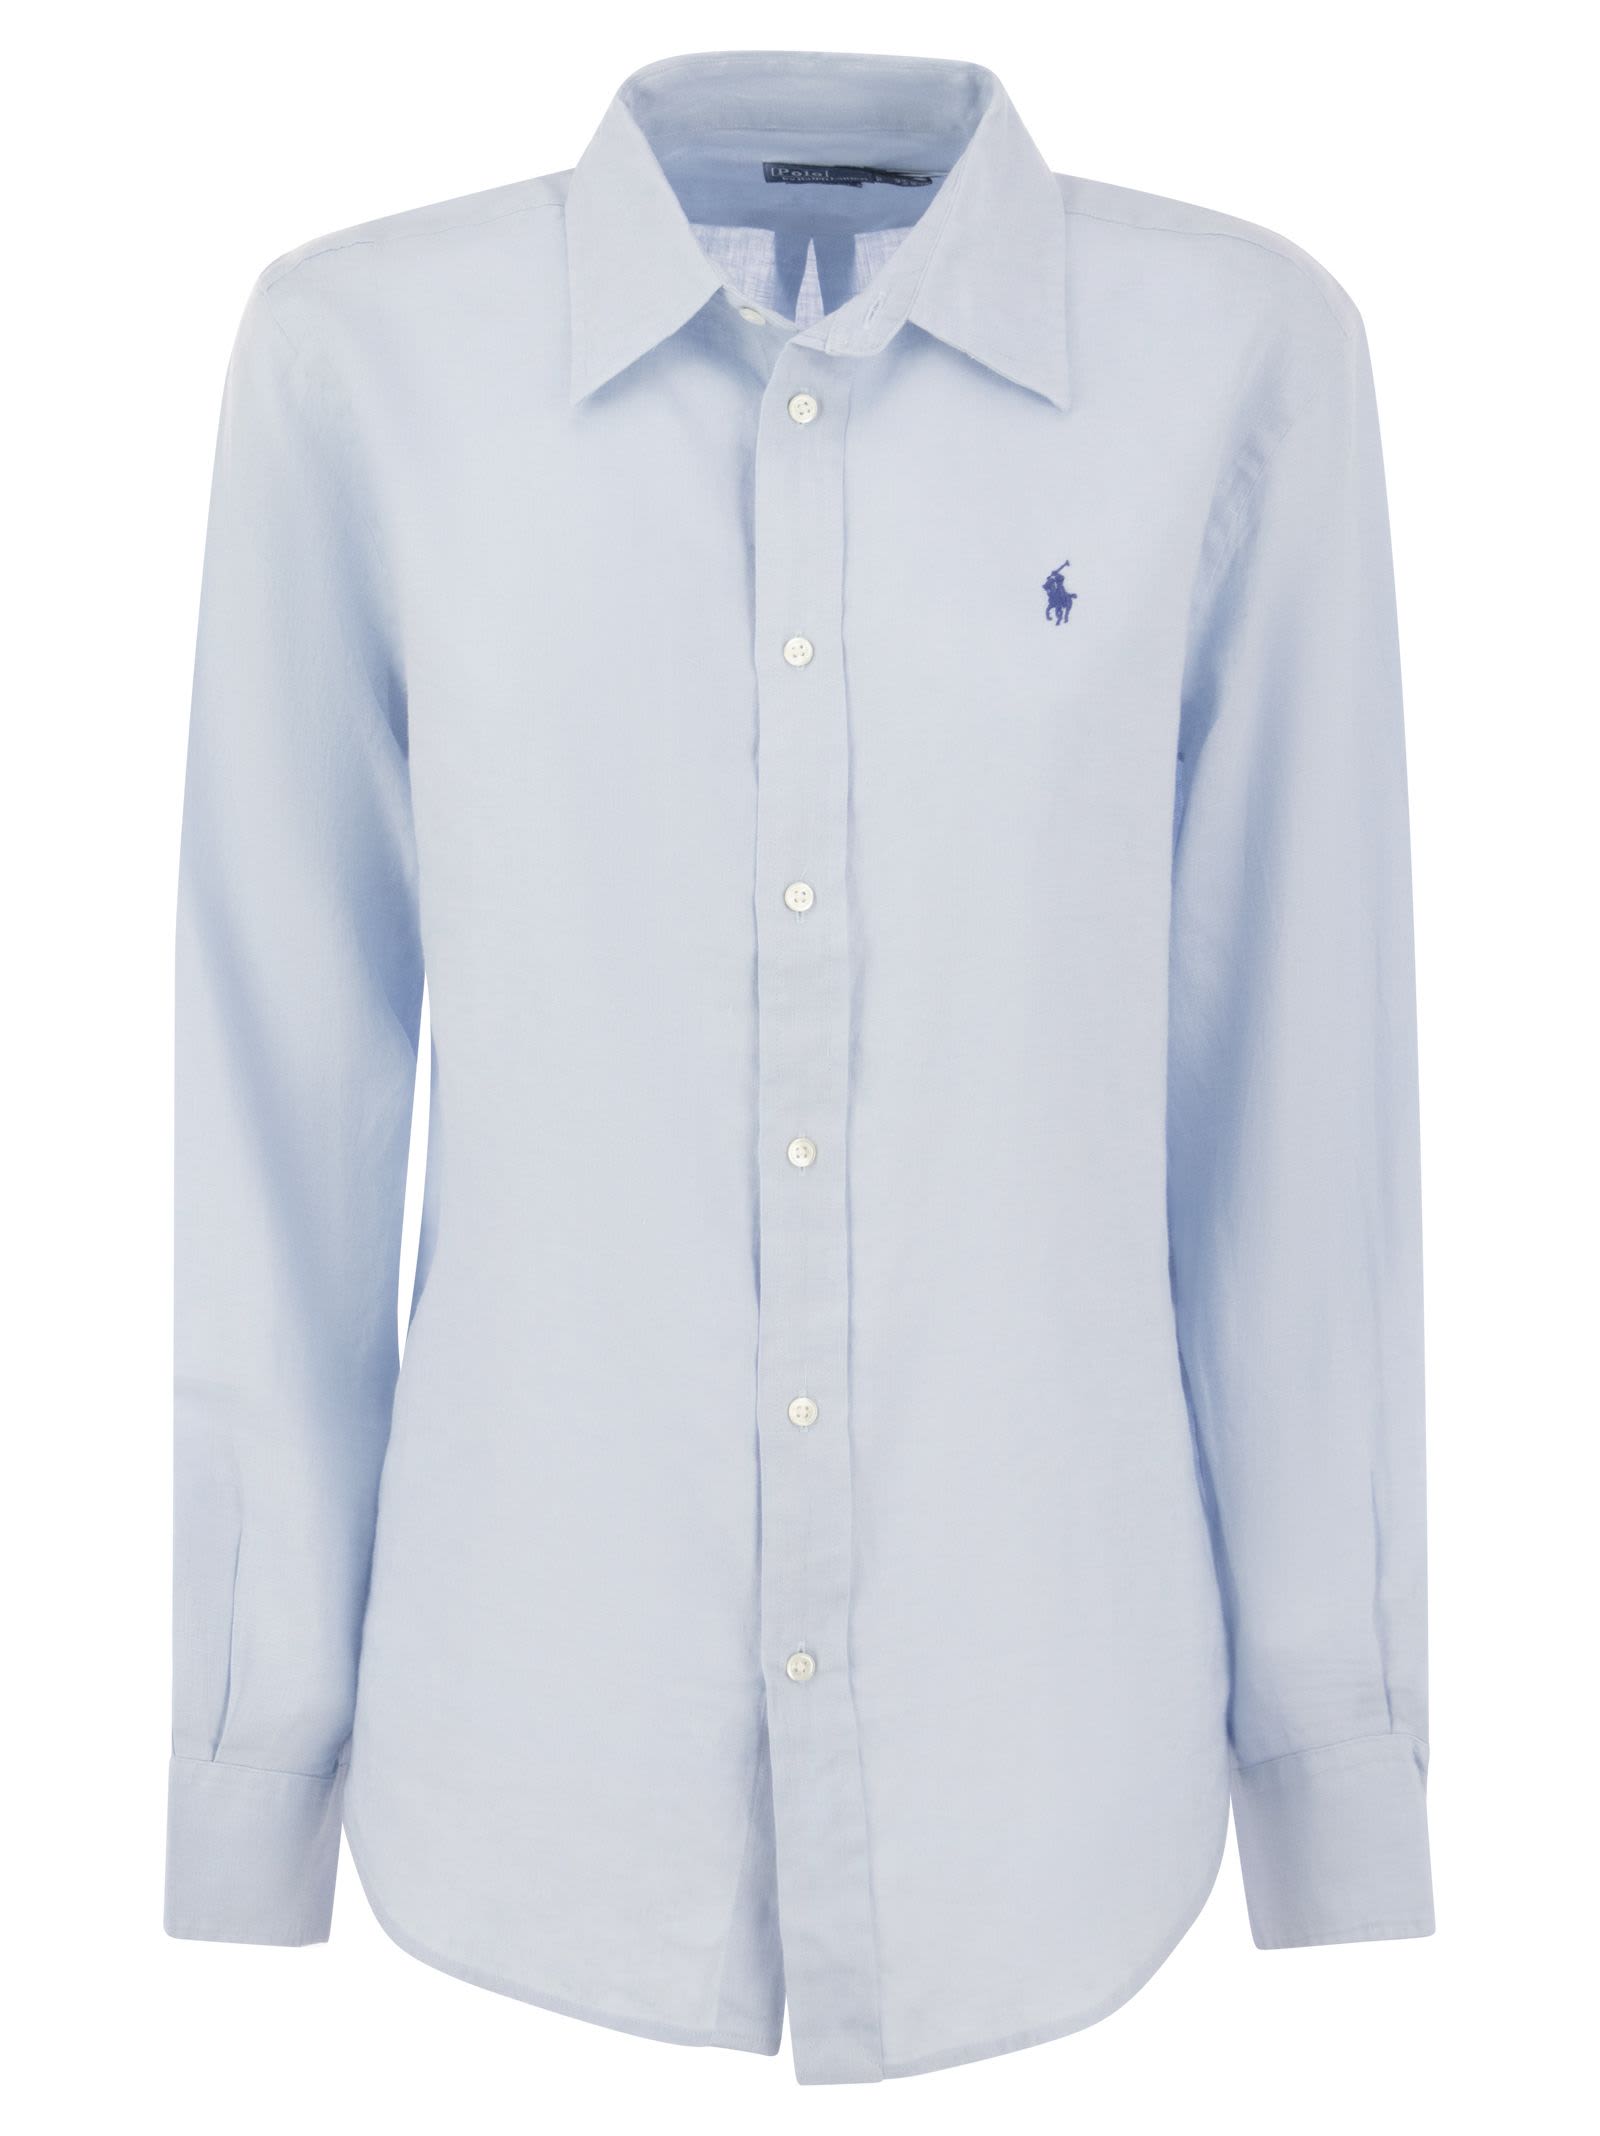 Relaxed-fit Short Shirt In Light Blue Linen